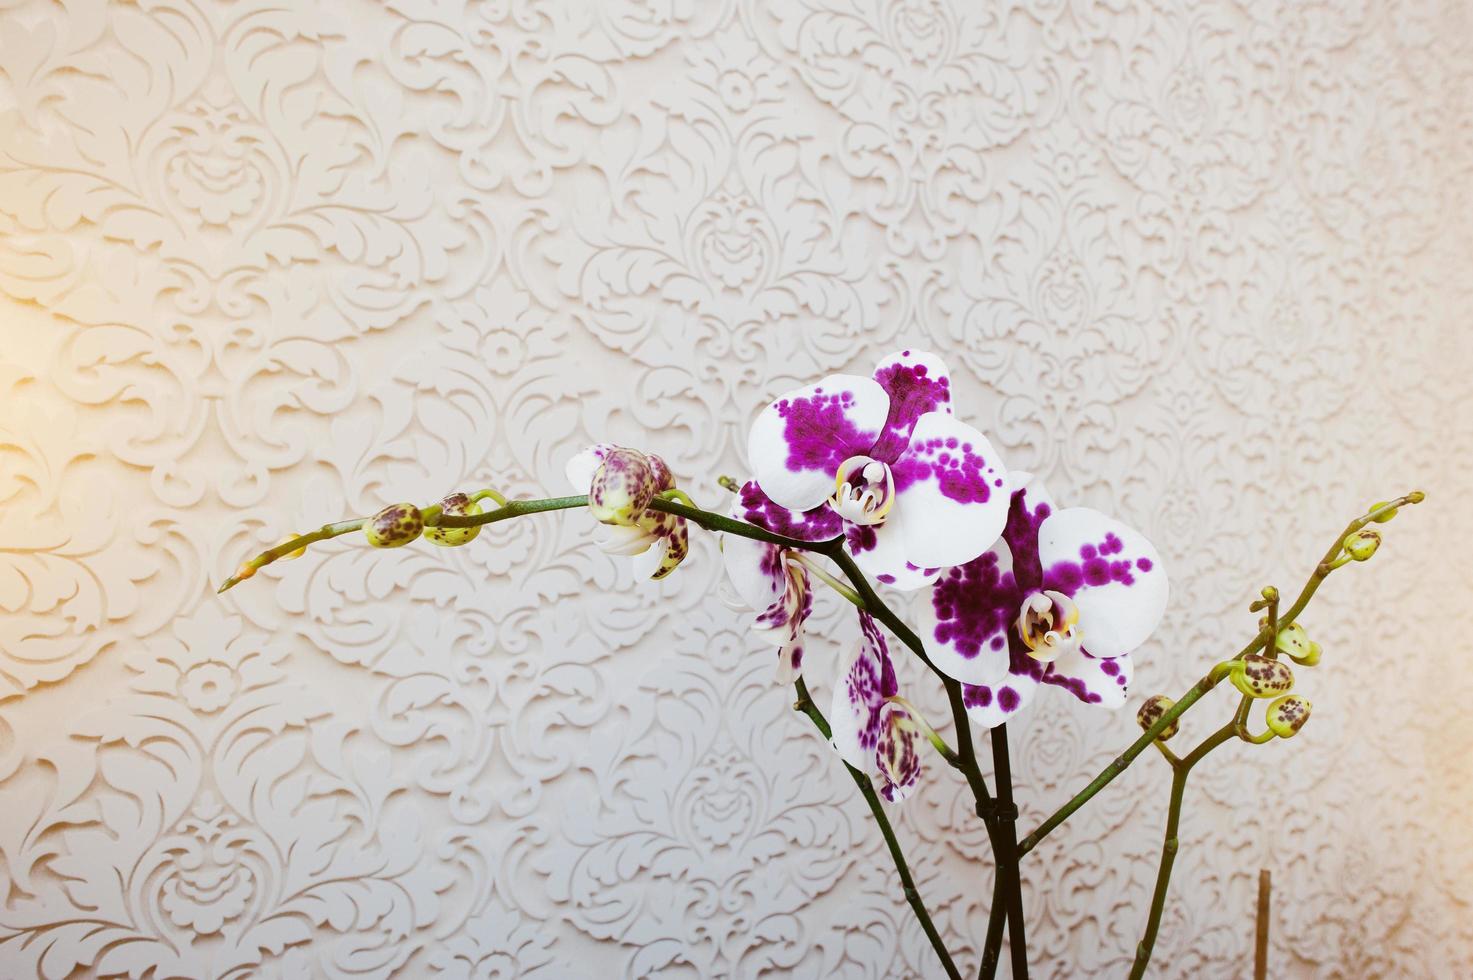 orchidée fleurs phalaenopsis multicolores sur fond de texture vanile photo